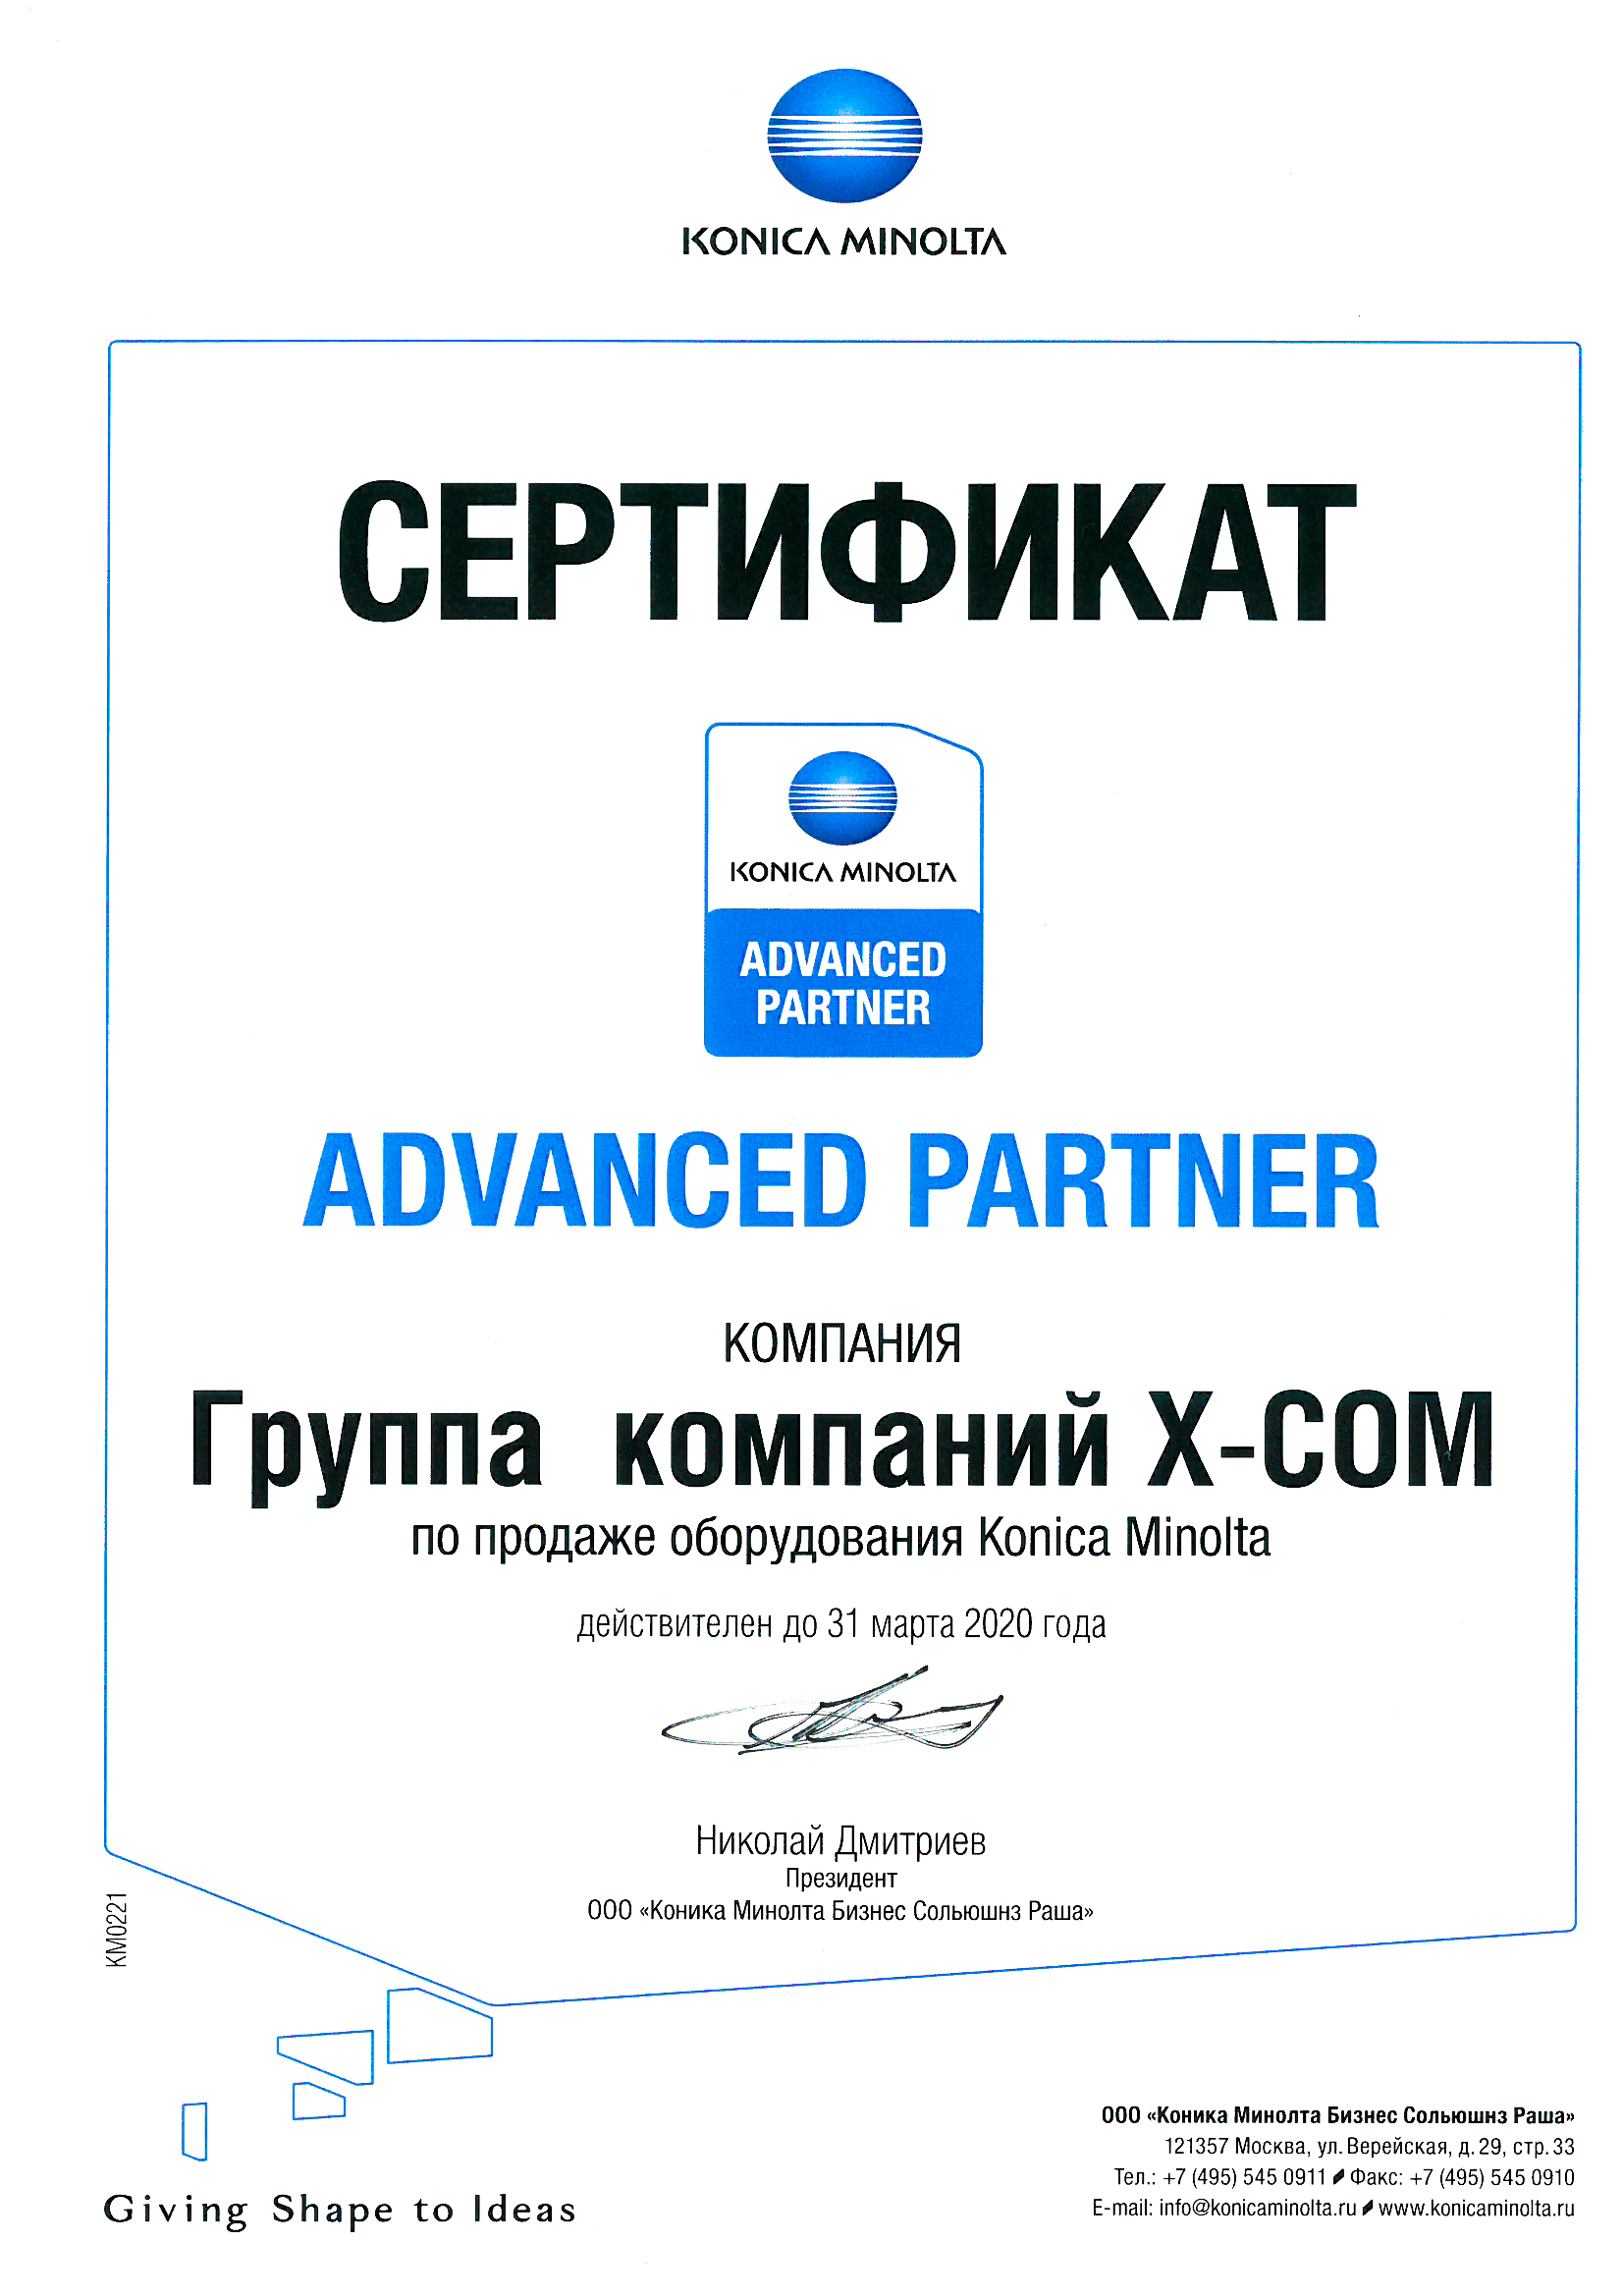 X-Com подтвердила партнерскую авторизацию Konica Minolta